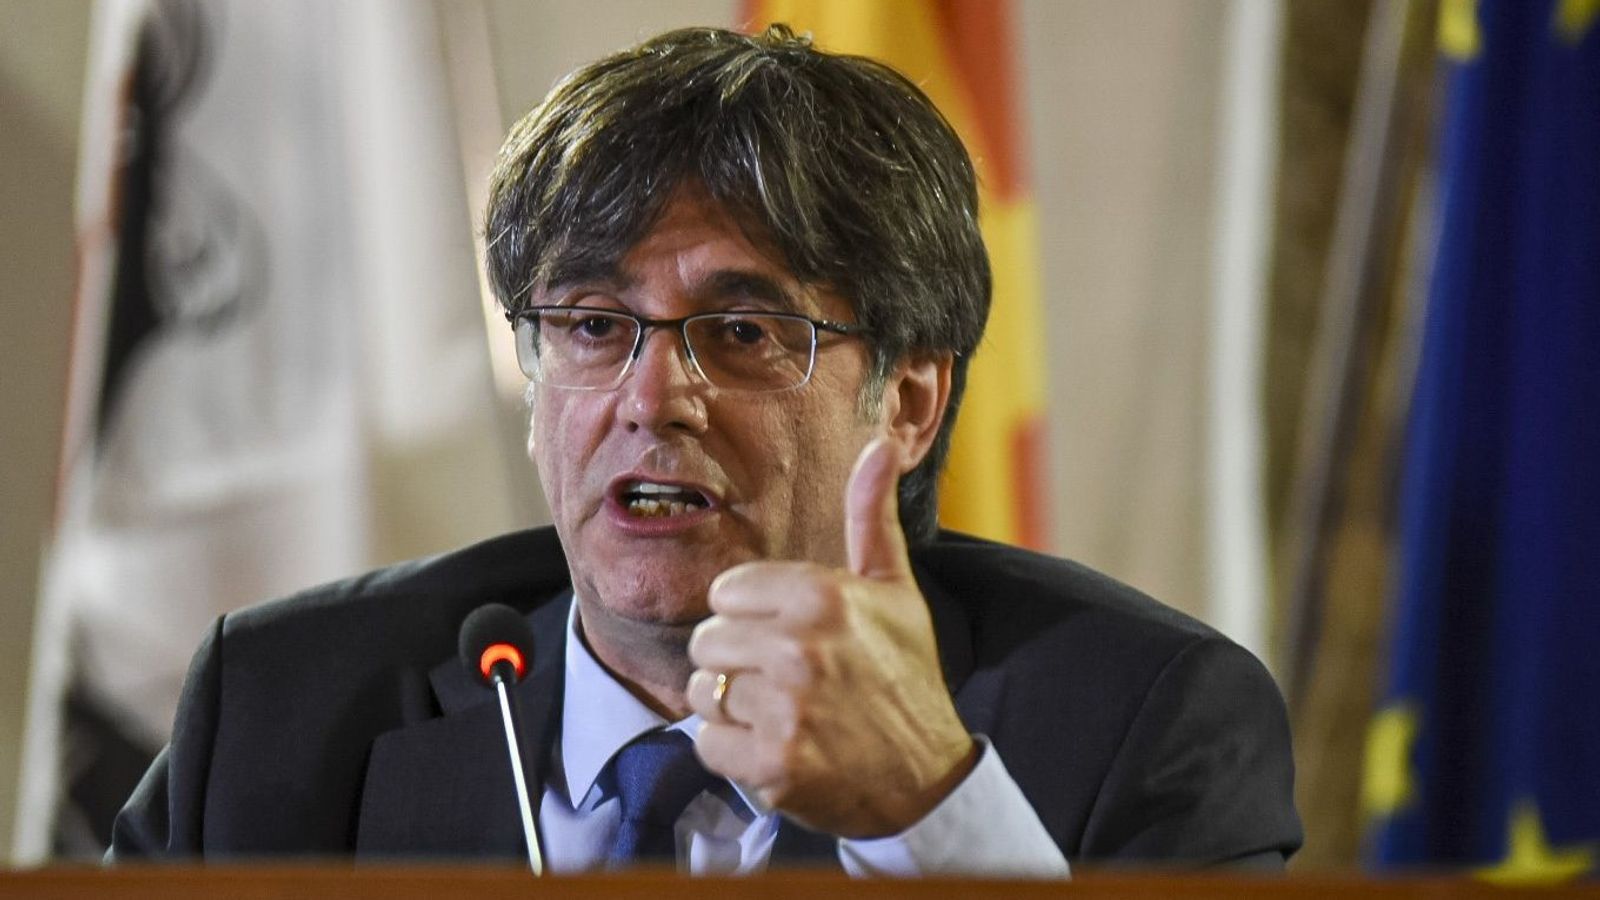 Politischer Kuhhandel zur Regierungsbildung nach den Wahlen in Spanien